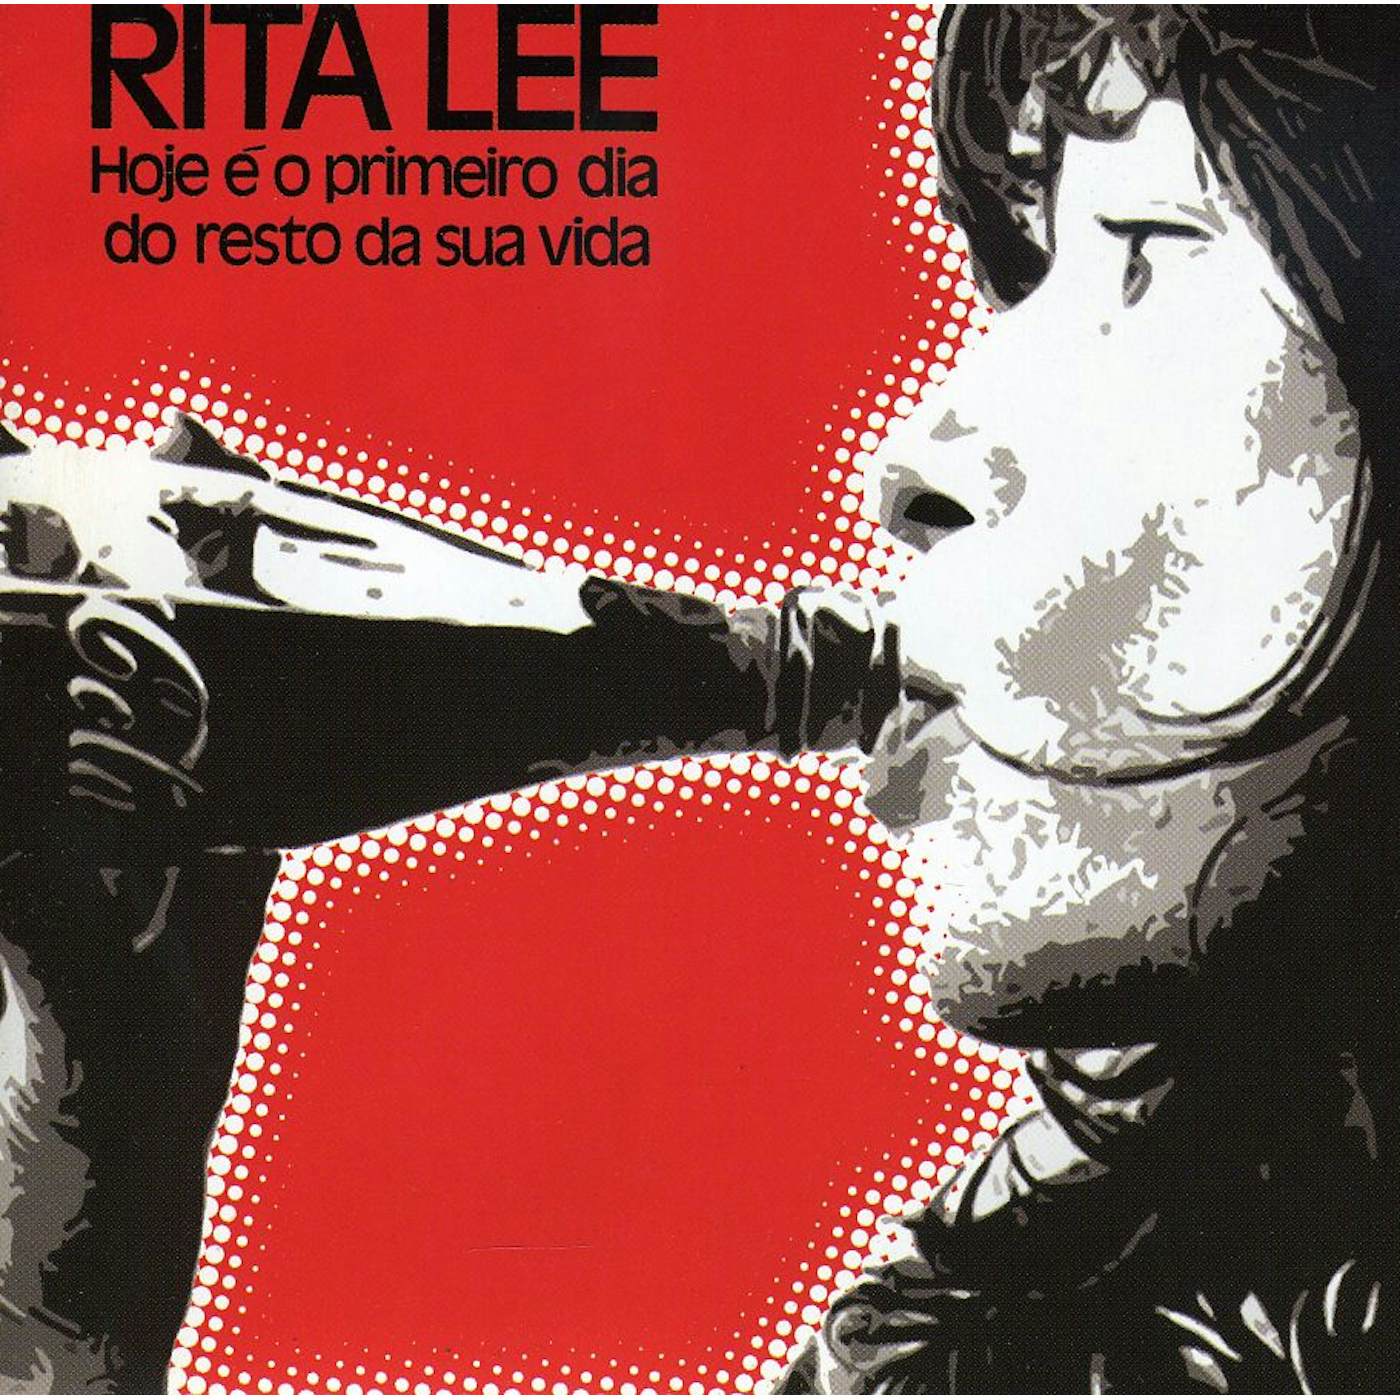 Rita Lee HOJE O PRIMEIRO DIA DO RESTO DA SUA VIDA CD